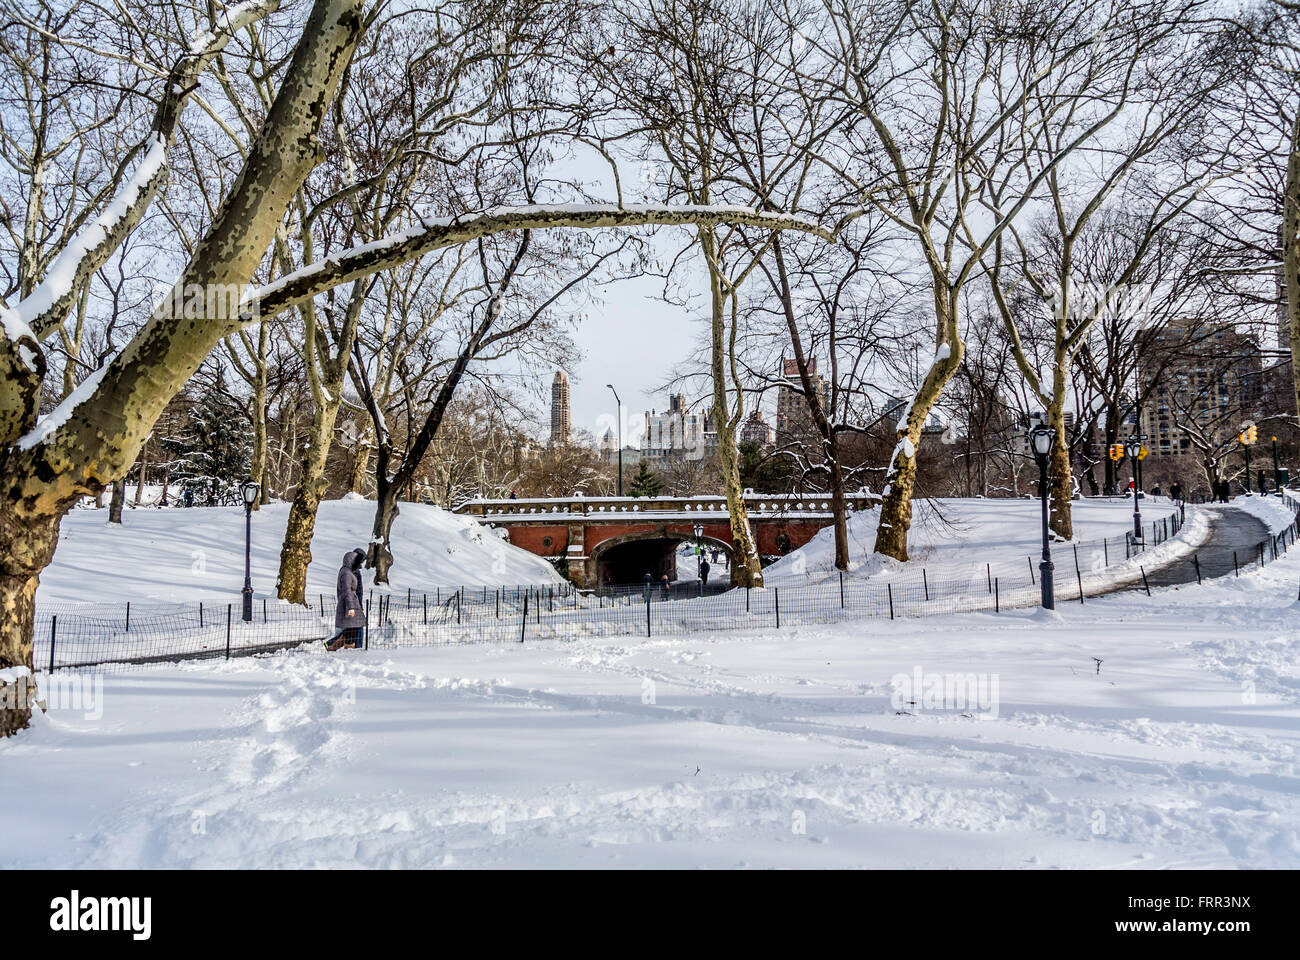 Central Park in inverno coperto di neve, New York City, Stati Uniti d'America. Foto Stock